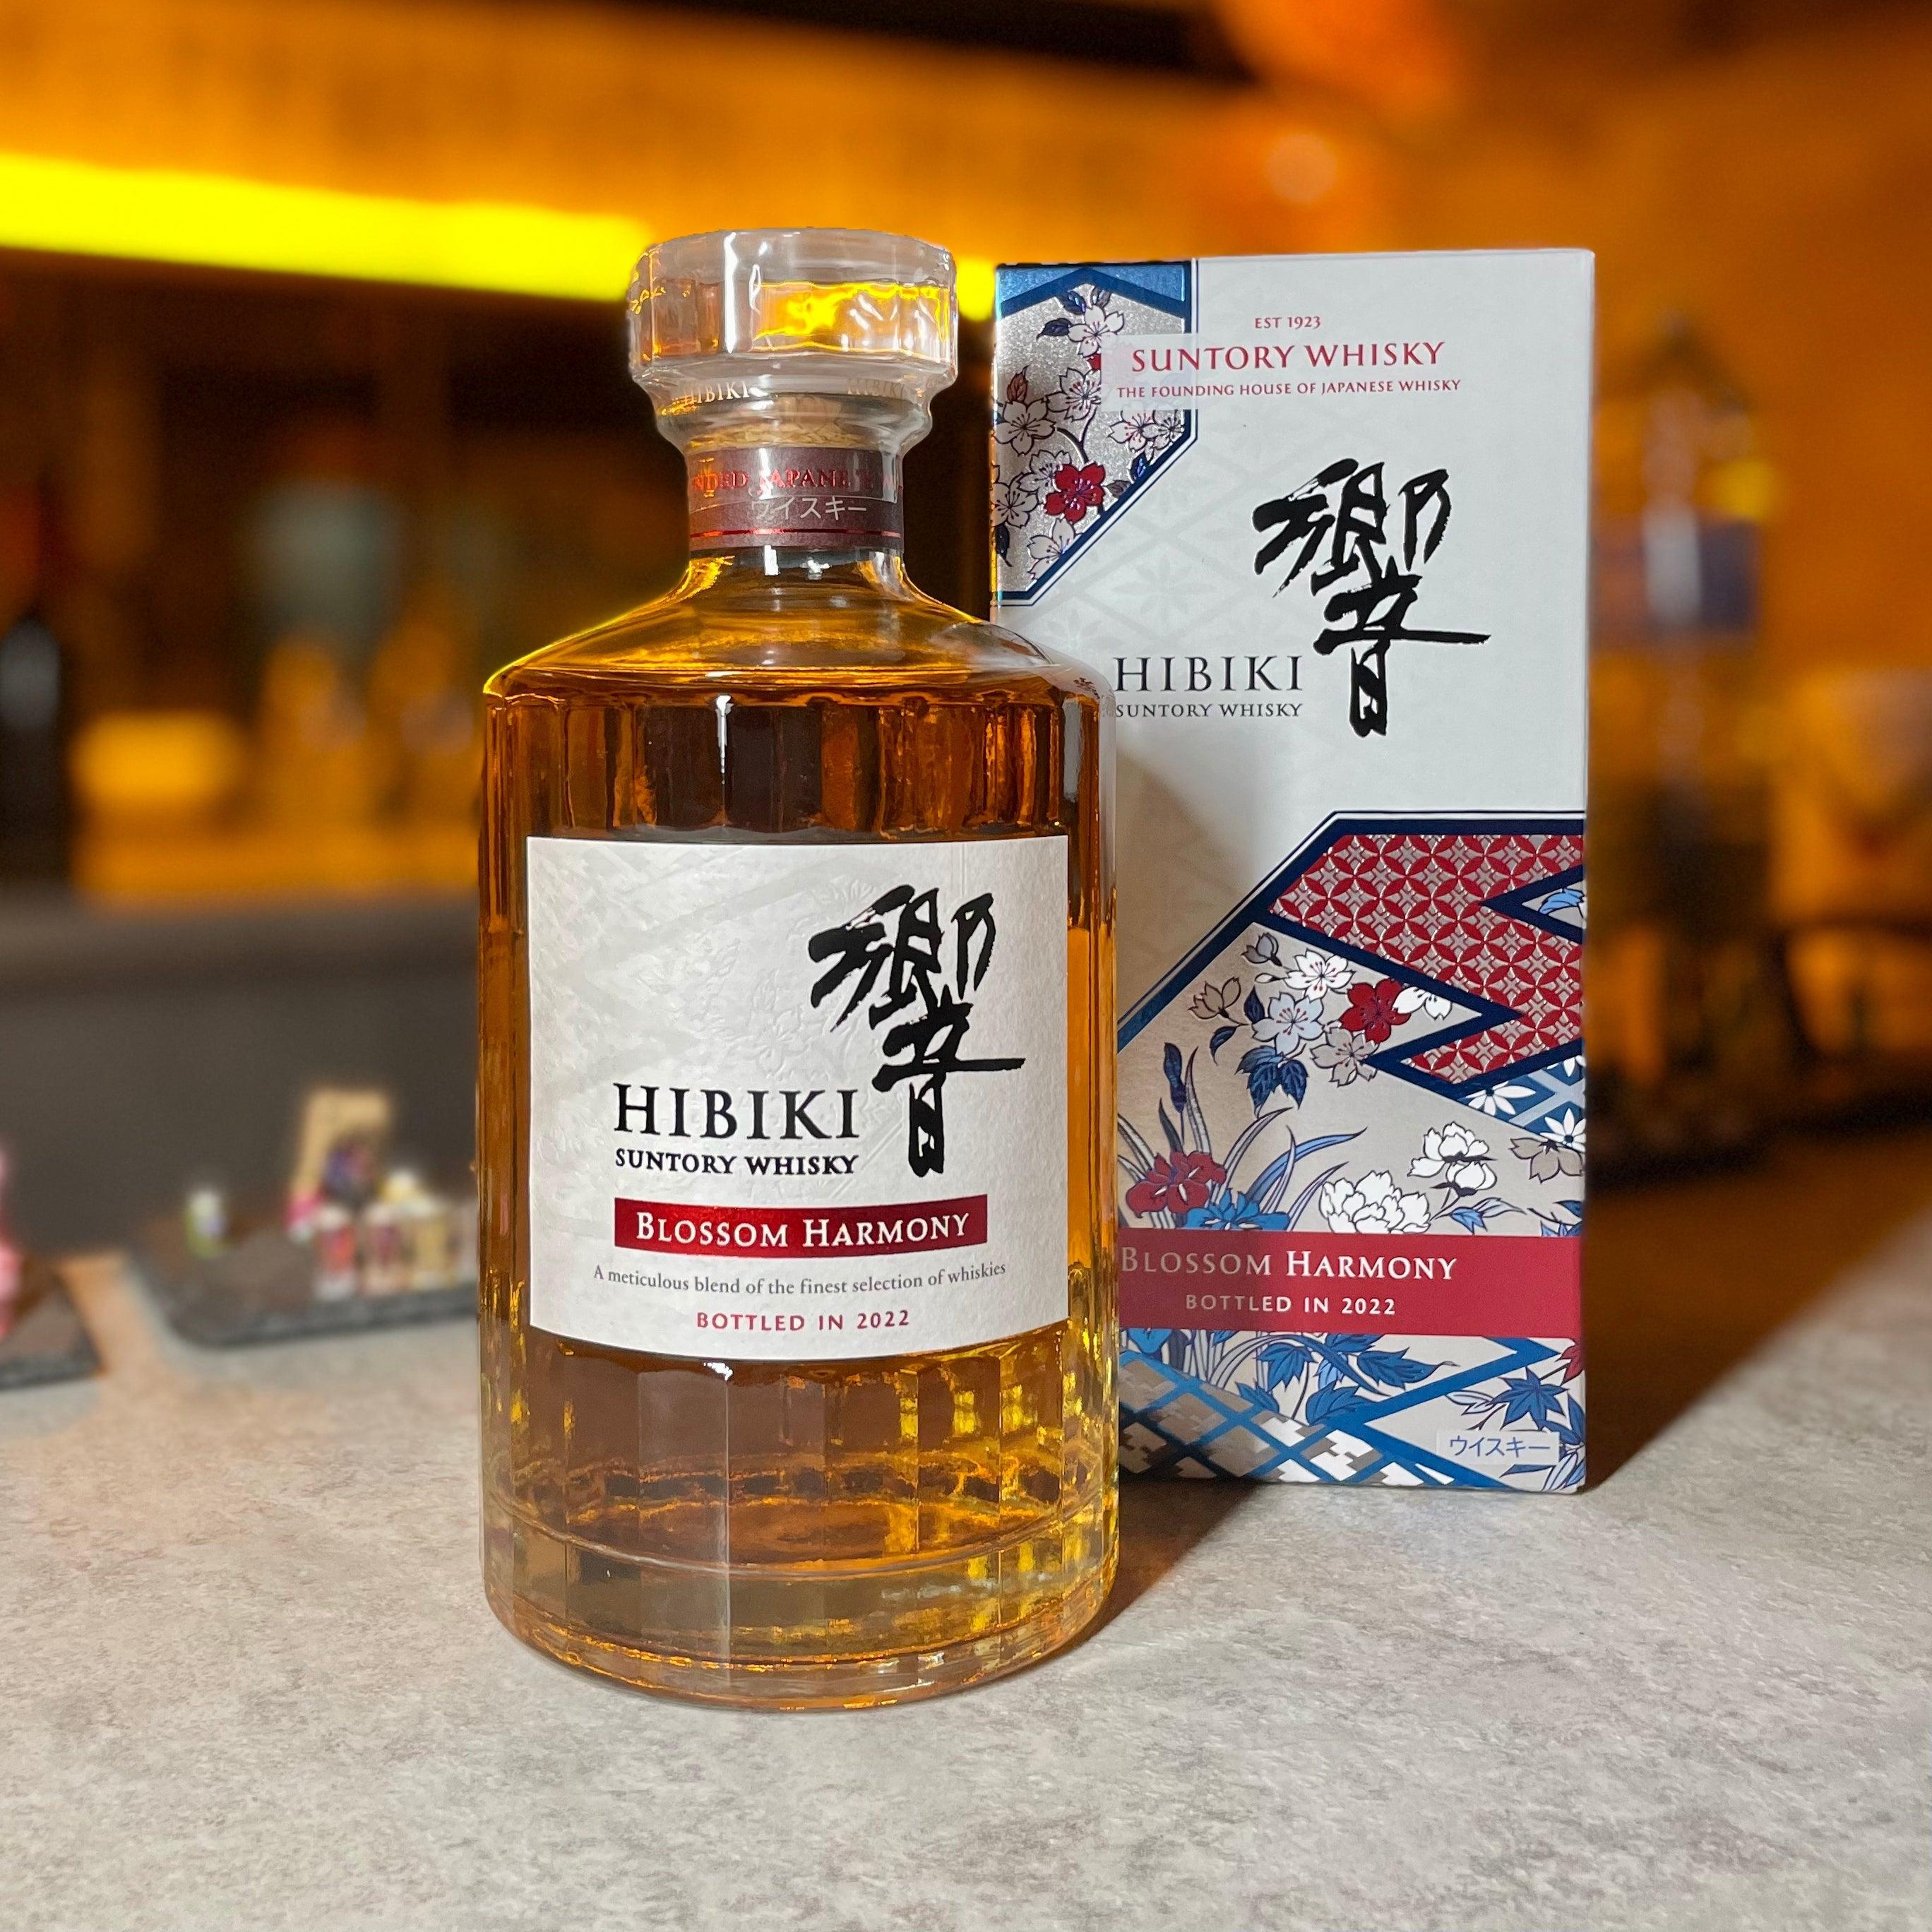 日本威士忌- 響Blossom Harmony 2022年限定調和威士忌| Chillax.hk